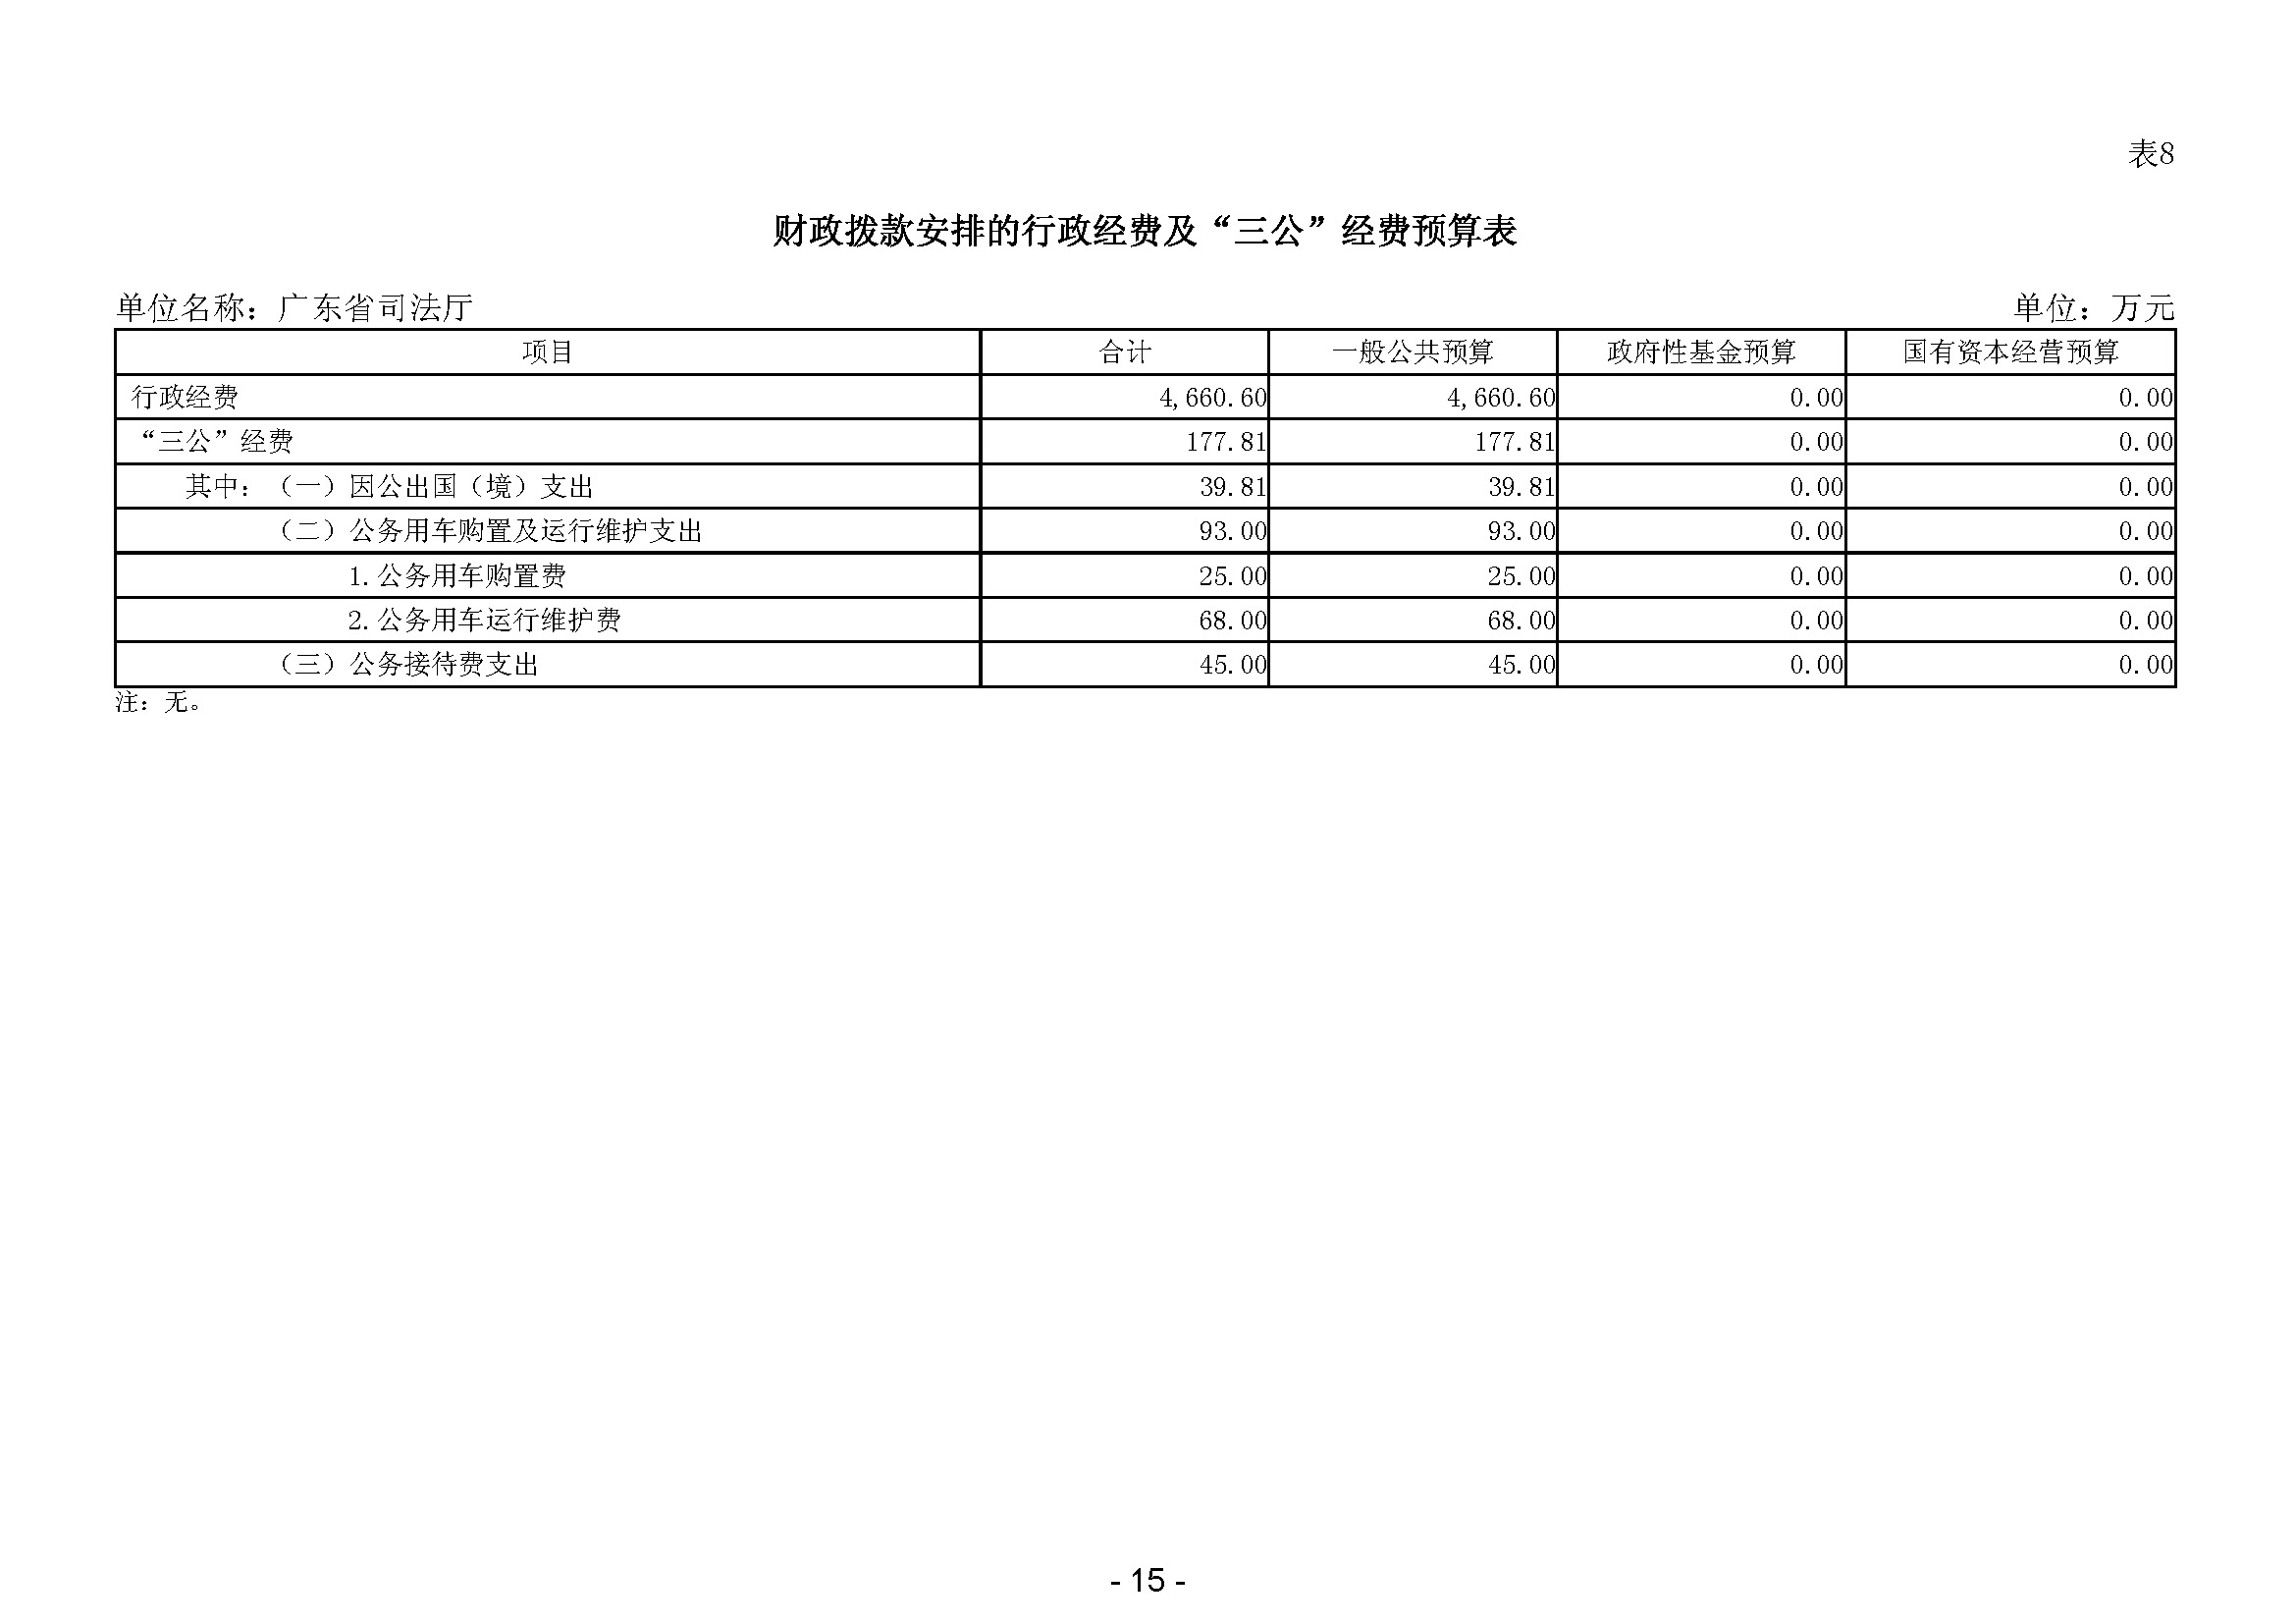 2024年广东省司法厅部门预算_(公开版)(留痕)_页面_17.jpg